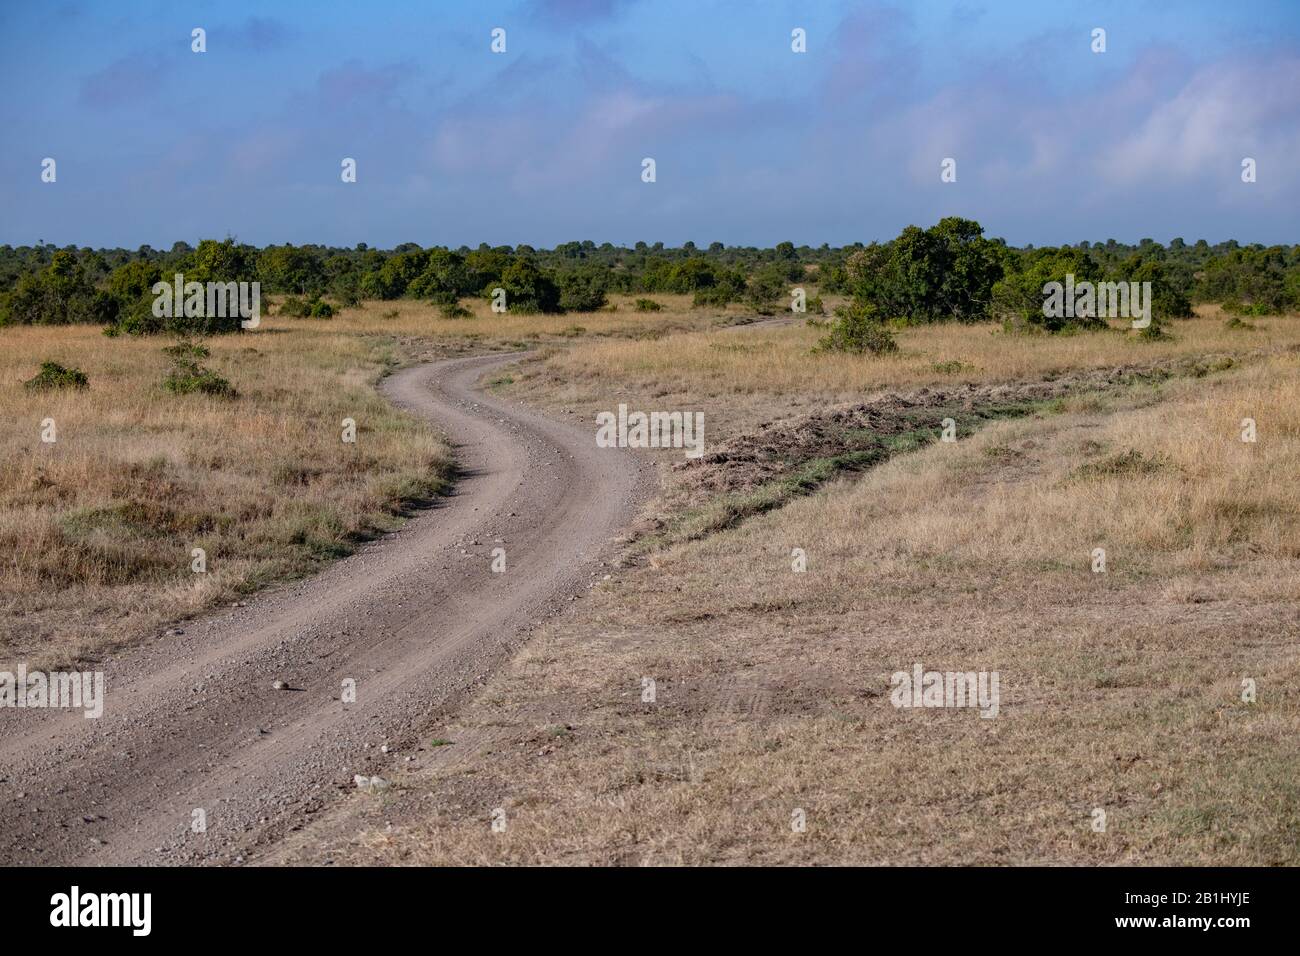 Gewundene, staubige Straße, die von Safarifahrzeugen in Masai Mara, Kenia, genutzt wird Stockfoto